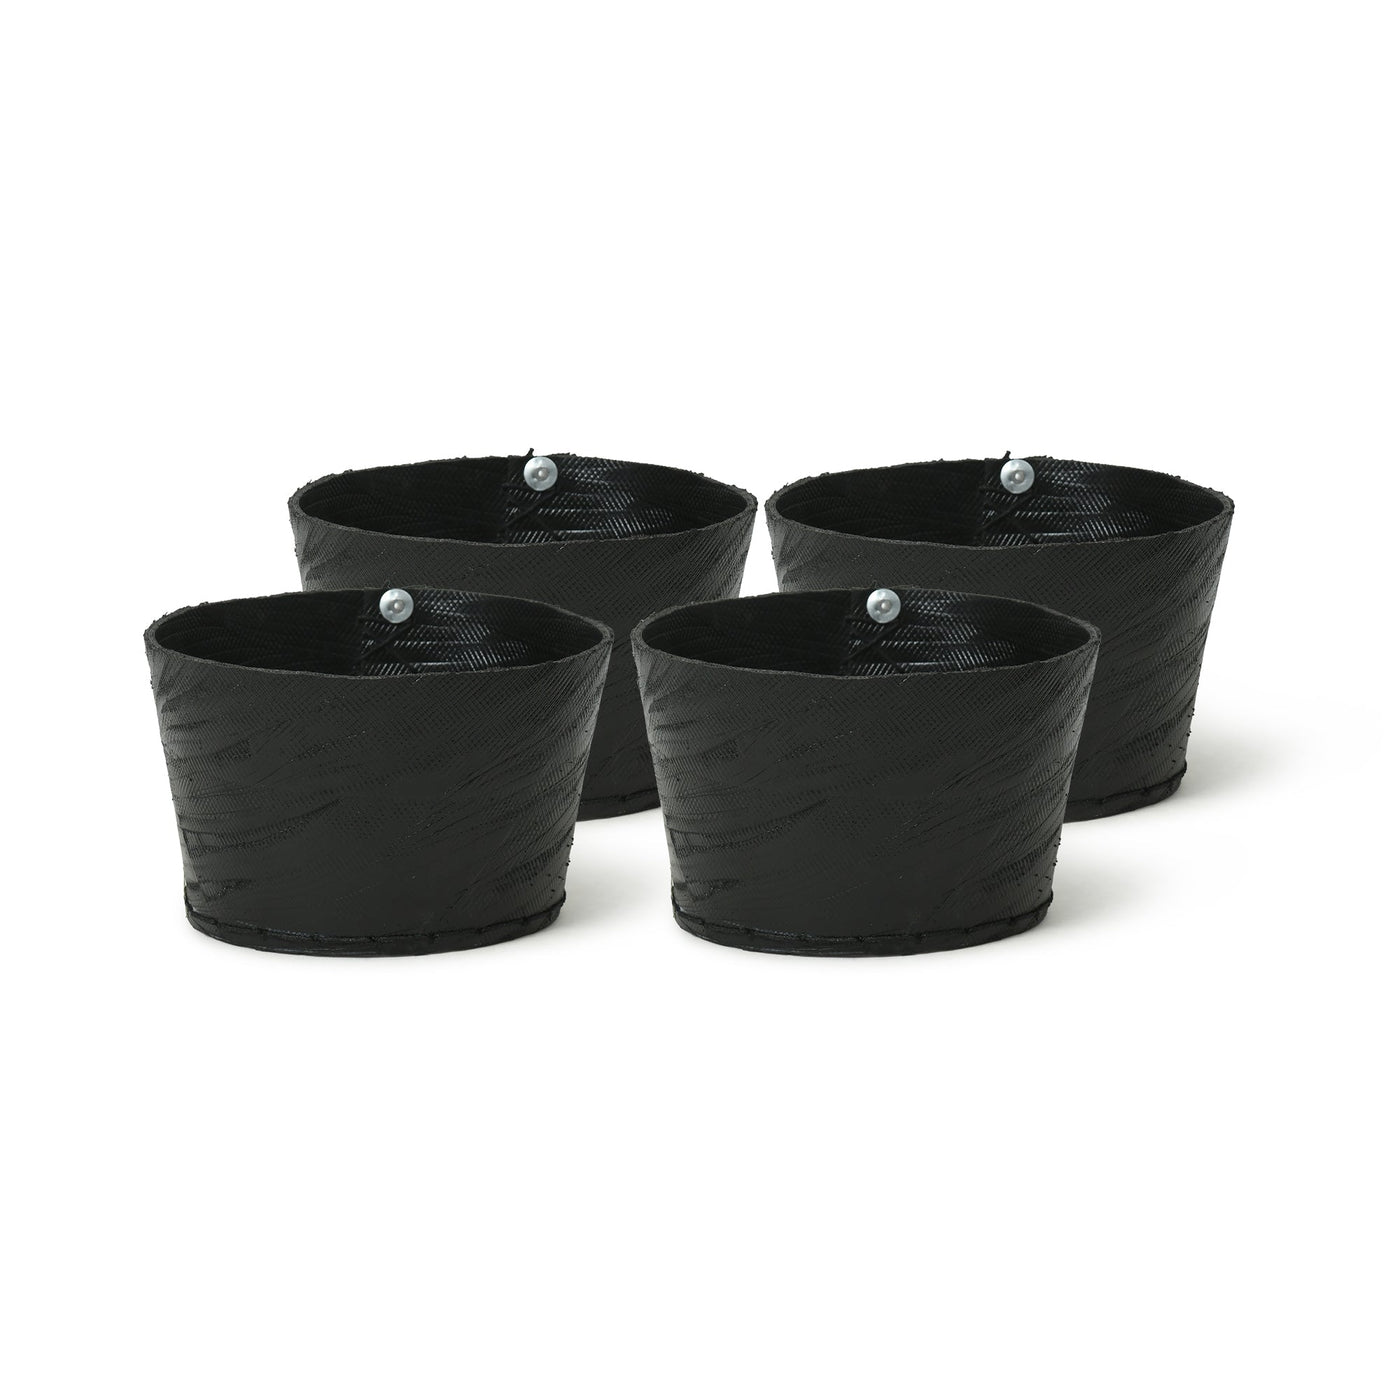 Small pots